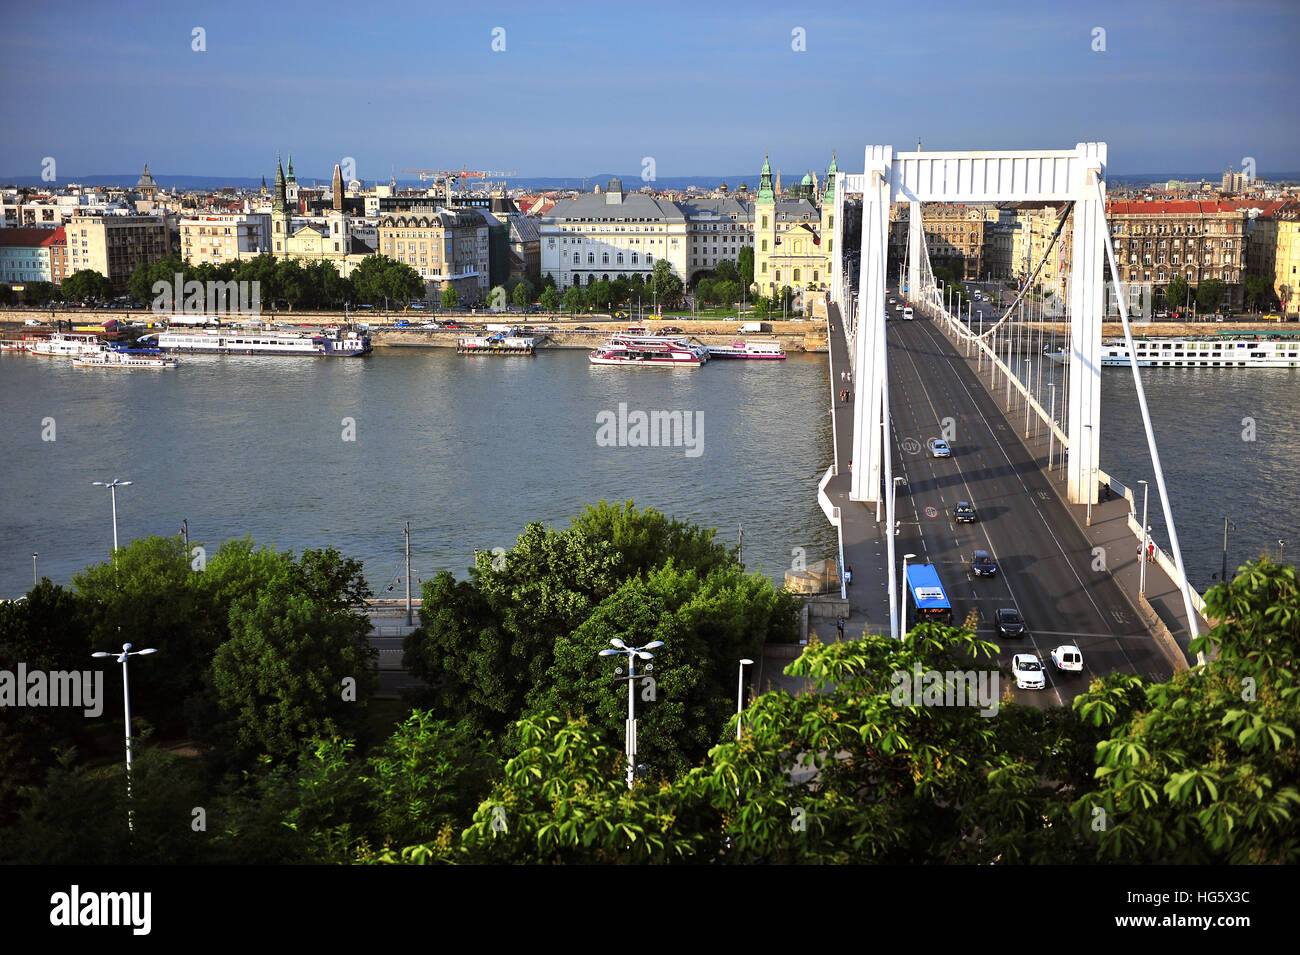 BUDAPEST, Ungarn - 23. Mai: Elisabethbrücke und Budapest City Center am 23. Mai 2016. Budapest ist die Hauptstadt und größte Stadt von Ungarn. Stockfoto